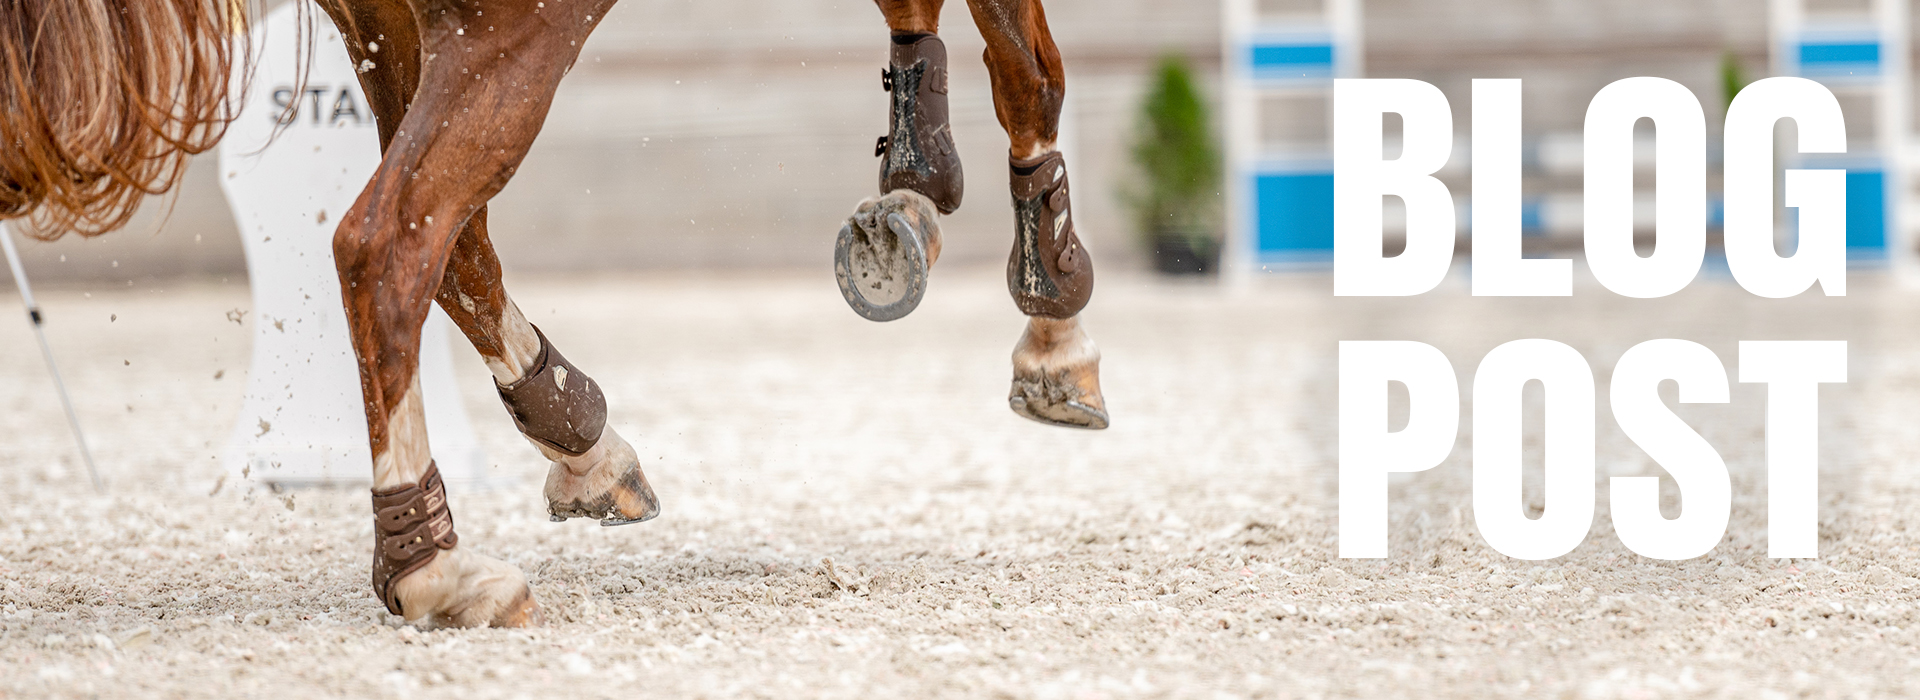 Sabot cheval : problèmes et soins du pied cheval - Le Paturon